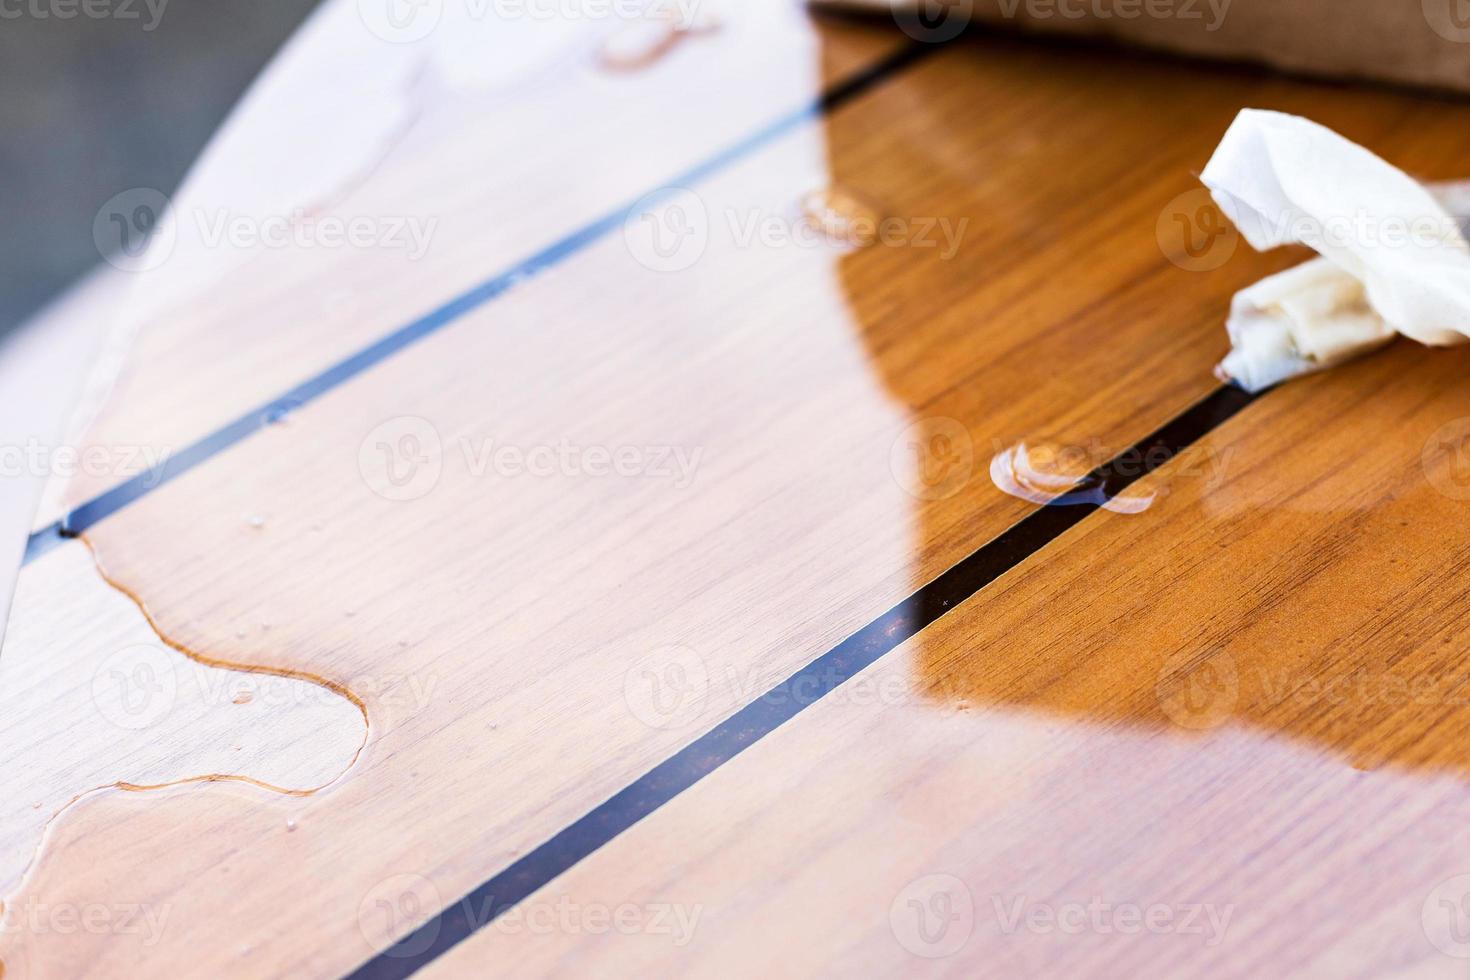 charco de cerveza derramada sobre la superficie de la mesa de madera foto